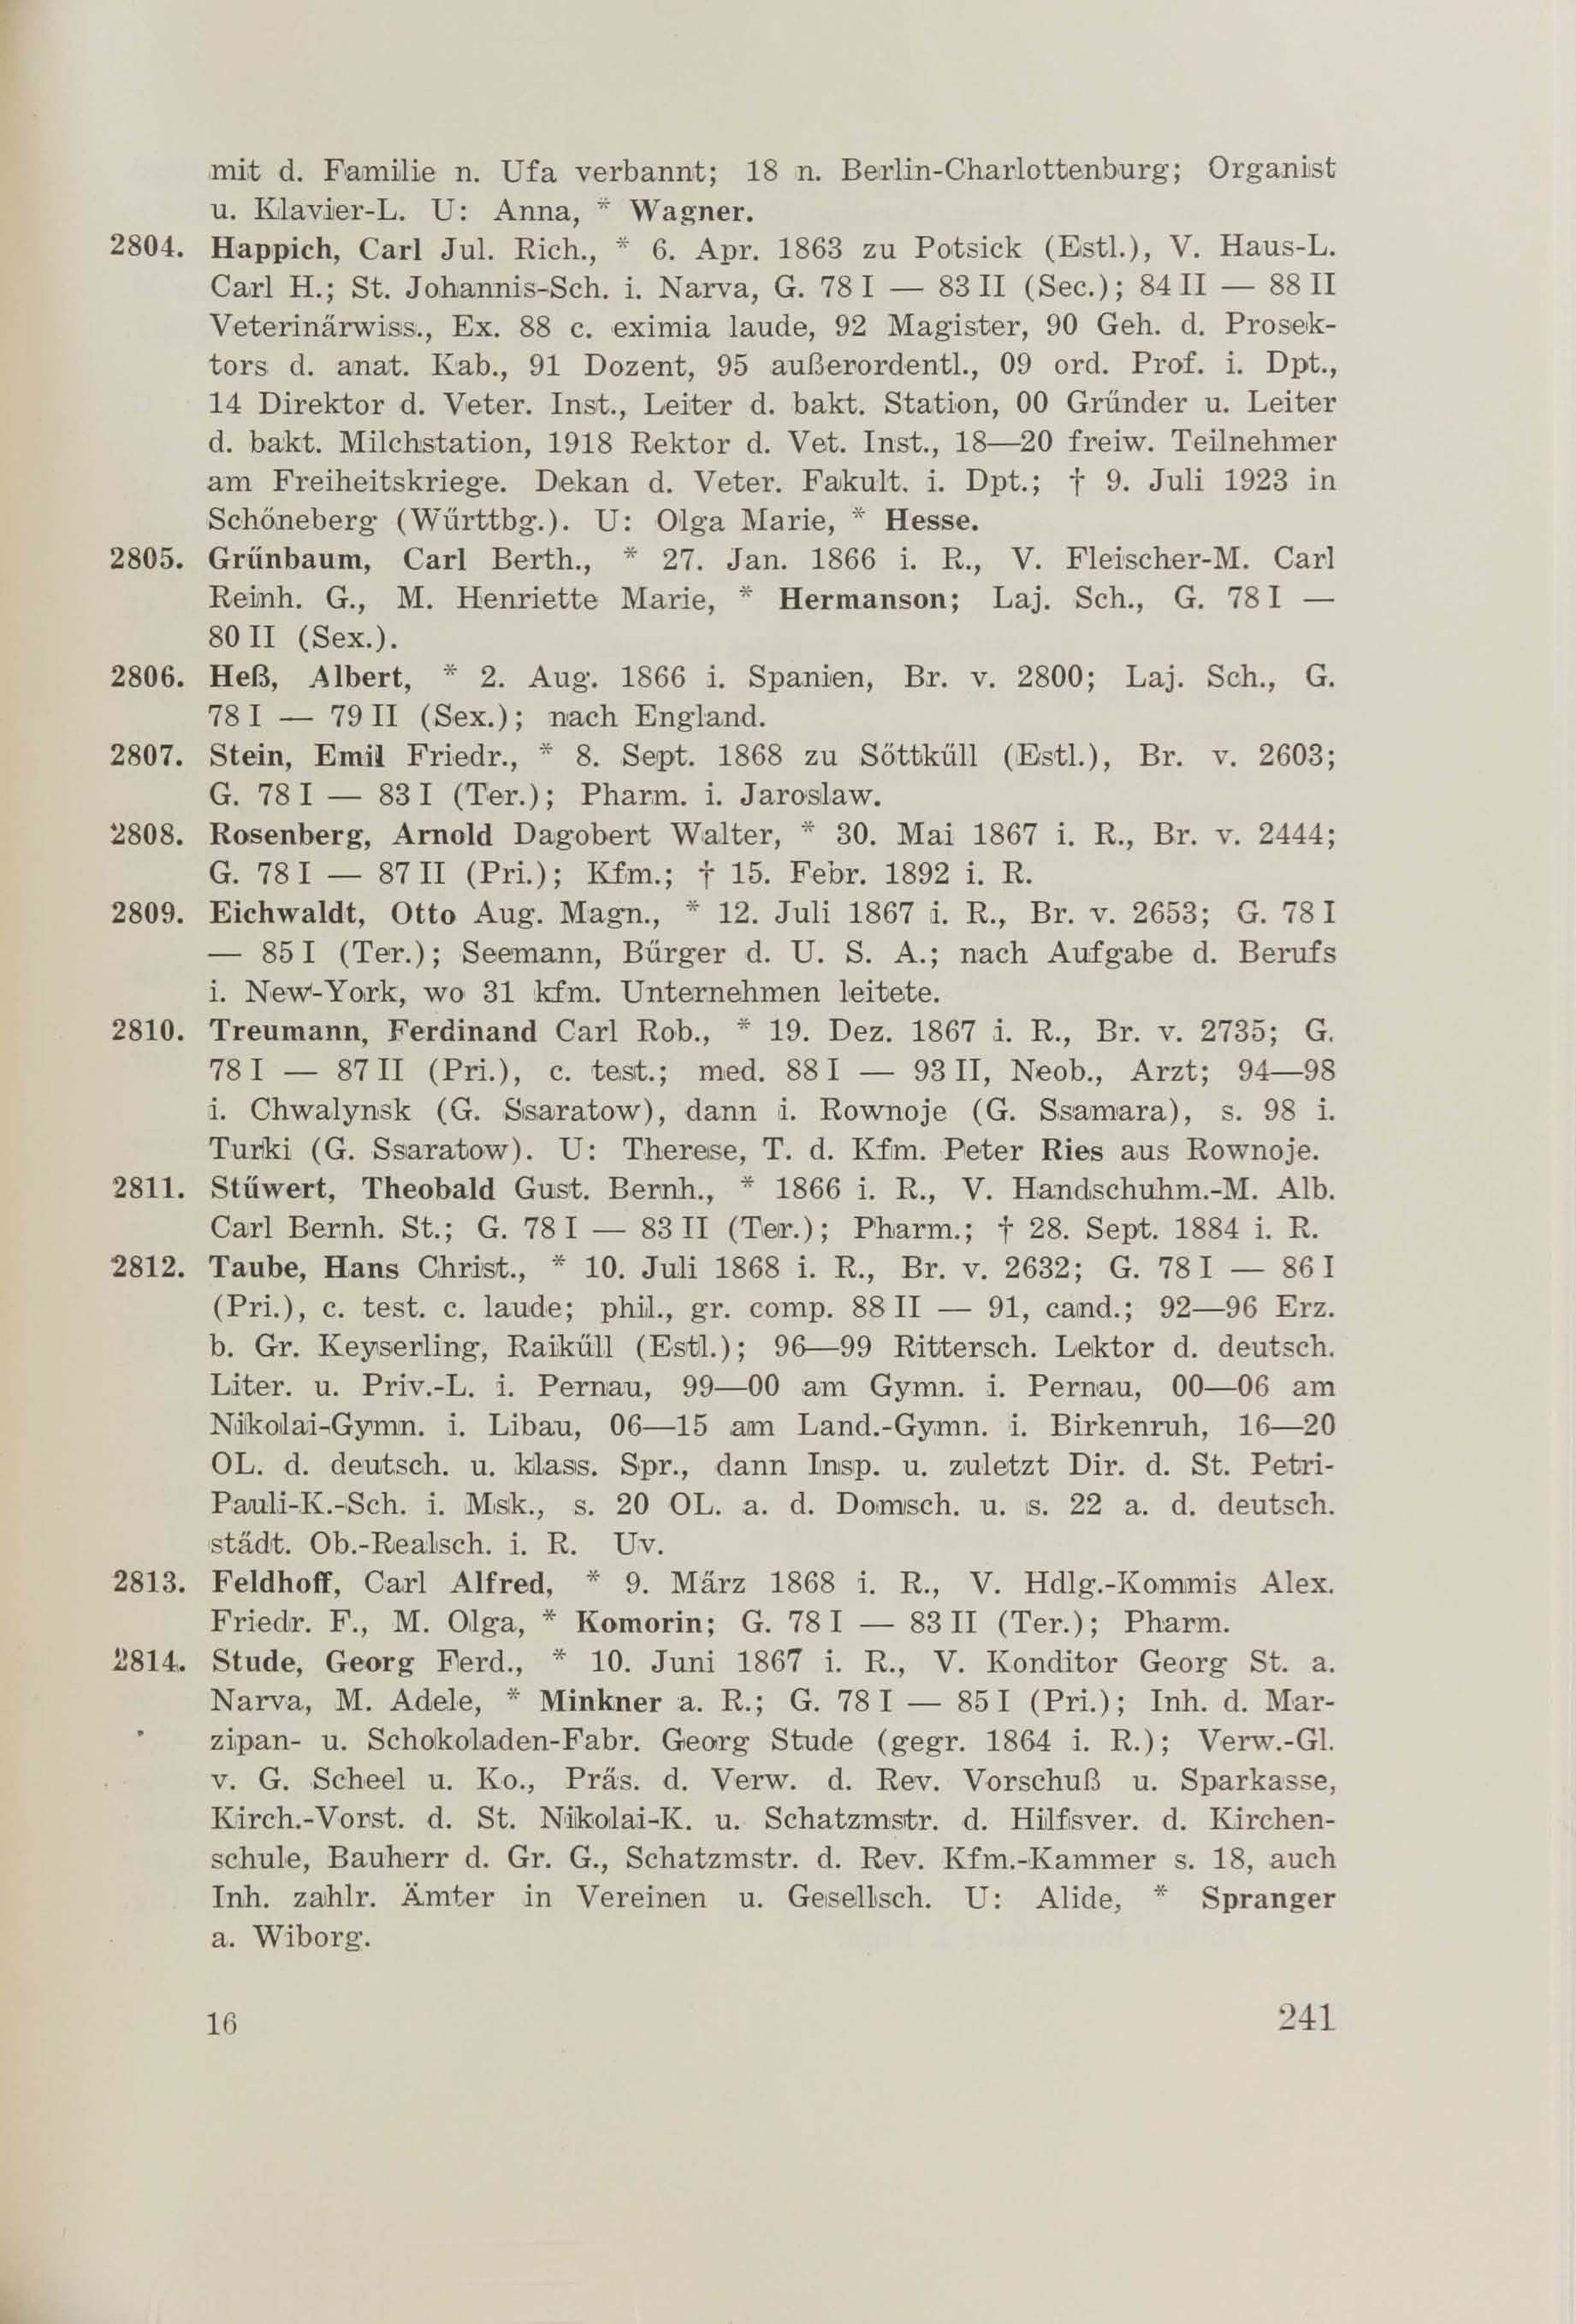 Schüler-Verzeichnis des Revalschen Gouvernements-Gymnasiums 1805–1890 (1931) | 251. (241) Main body of text